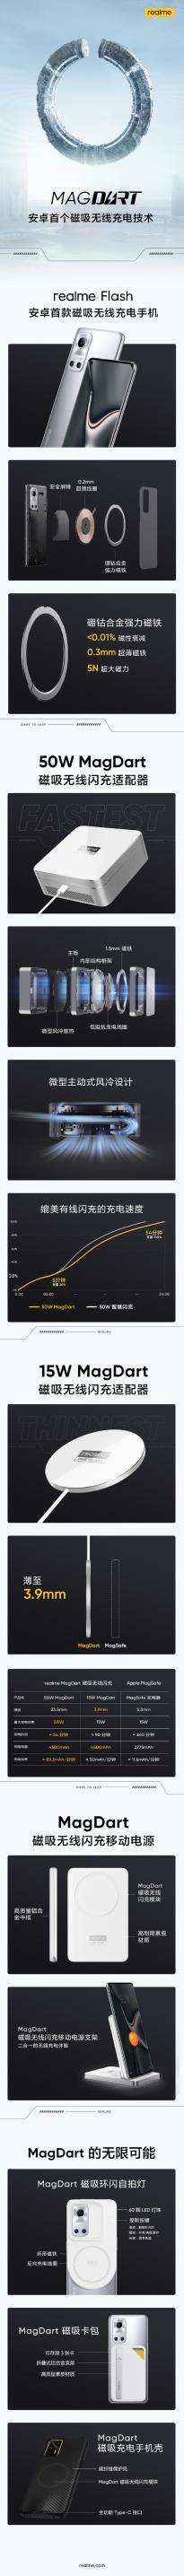 一图了解realme MagDart磁吸闪充技术发布会 业界最快50W无线磁吸闪充